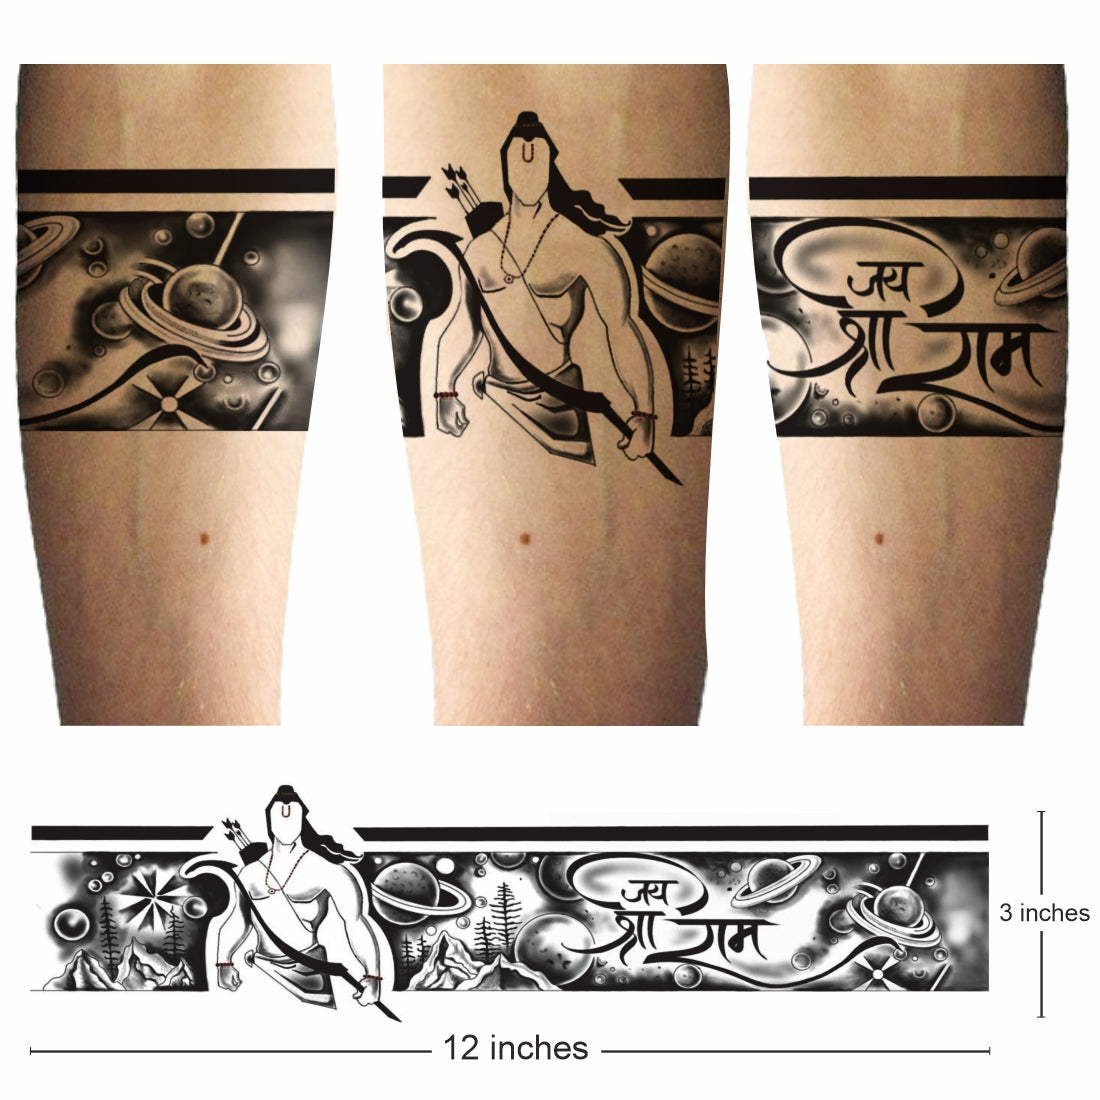 Shri Ram Tattoo on Back | Ram tattoo, Tattoos, Back tattoo